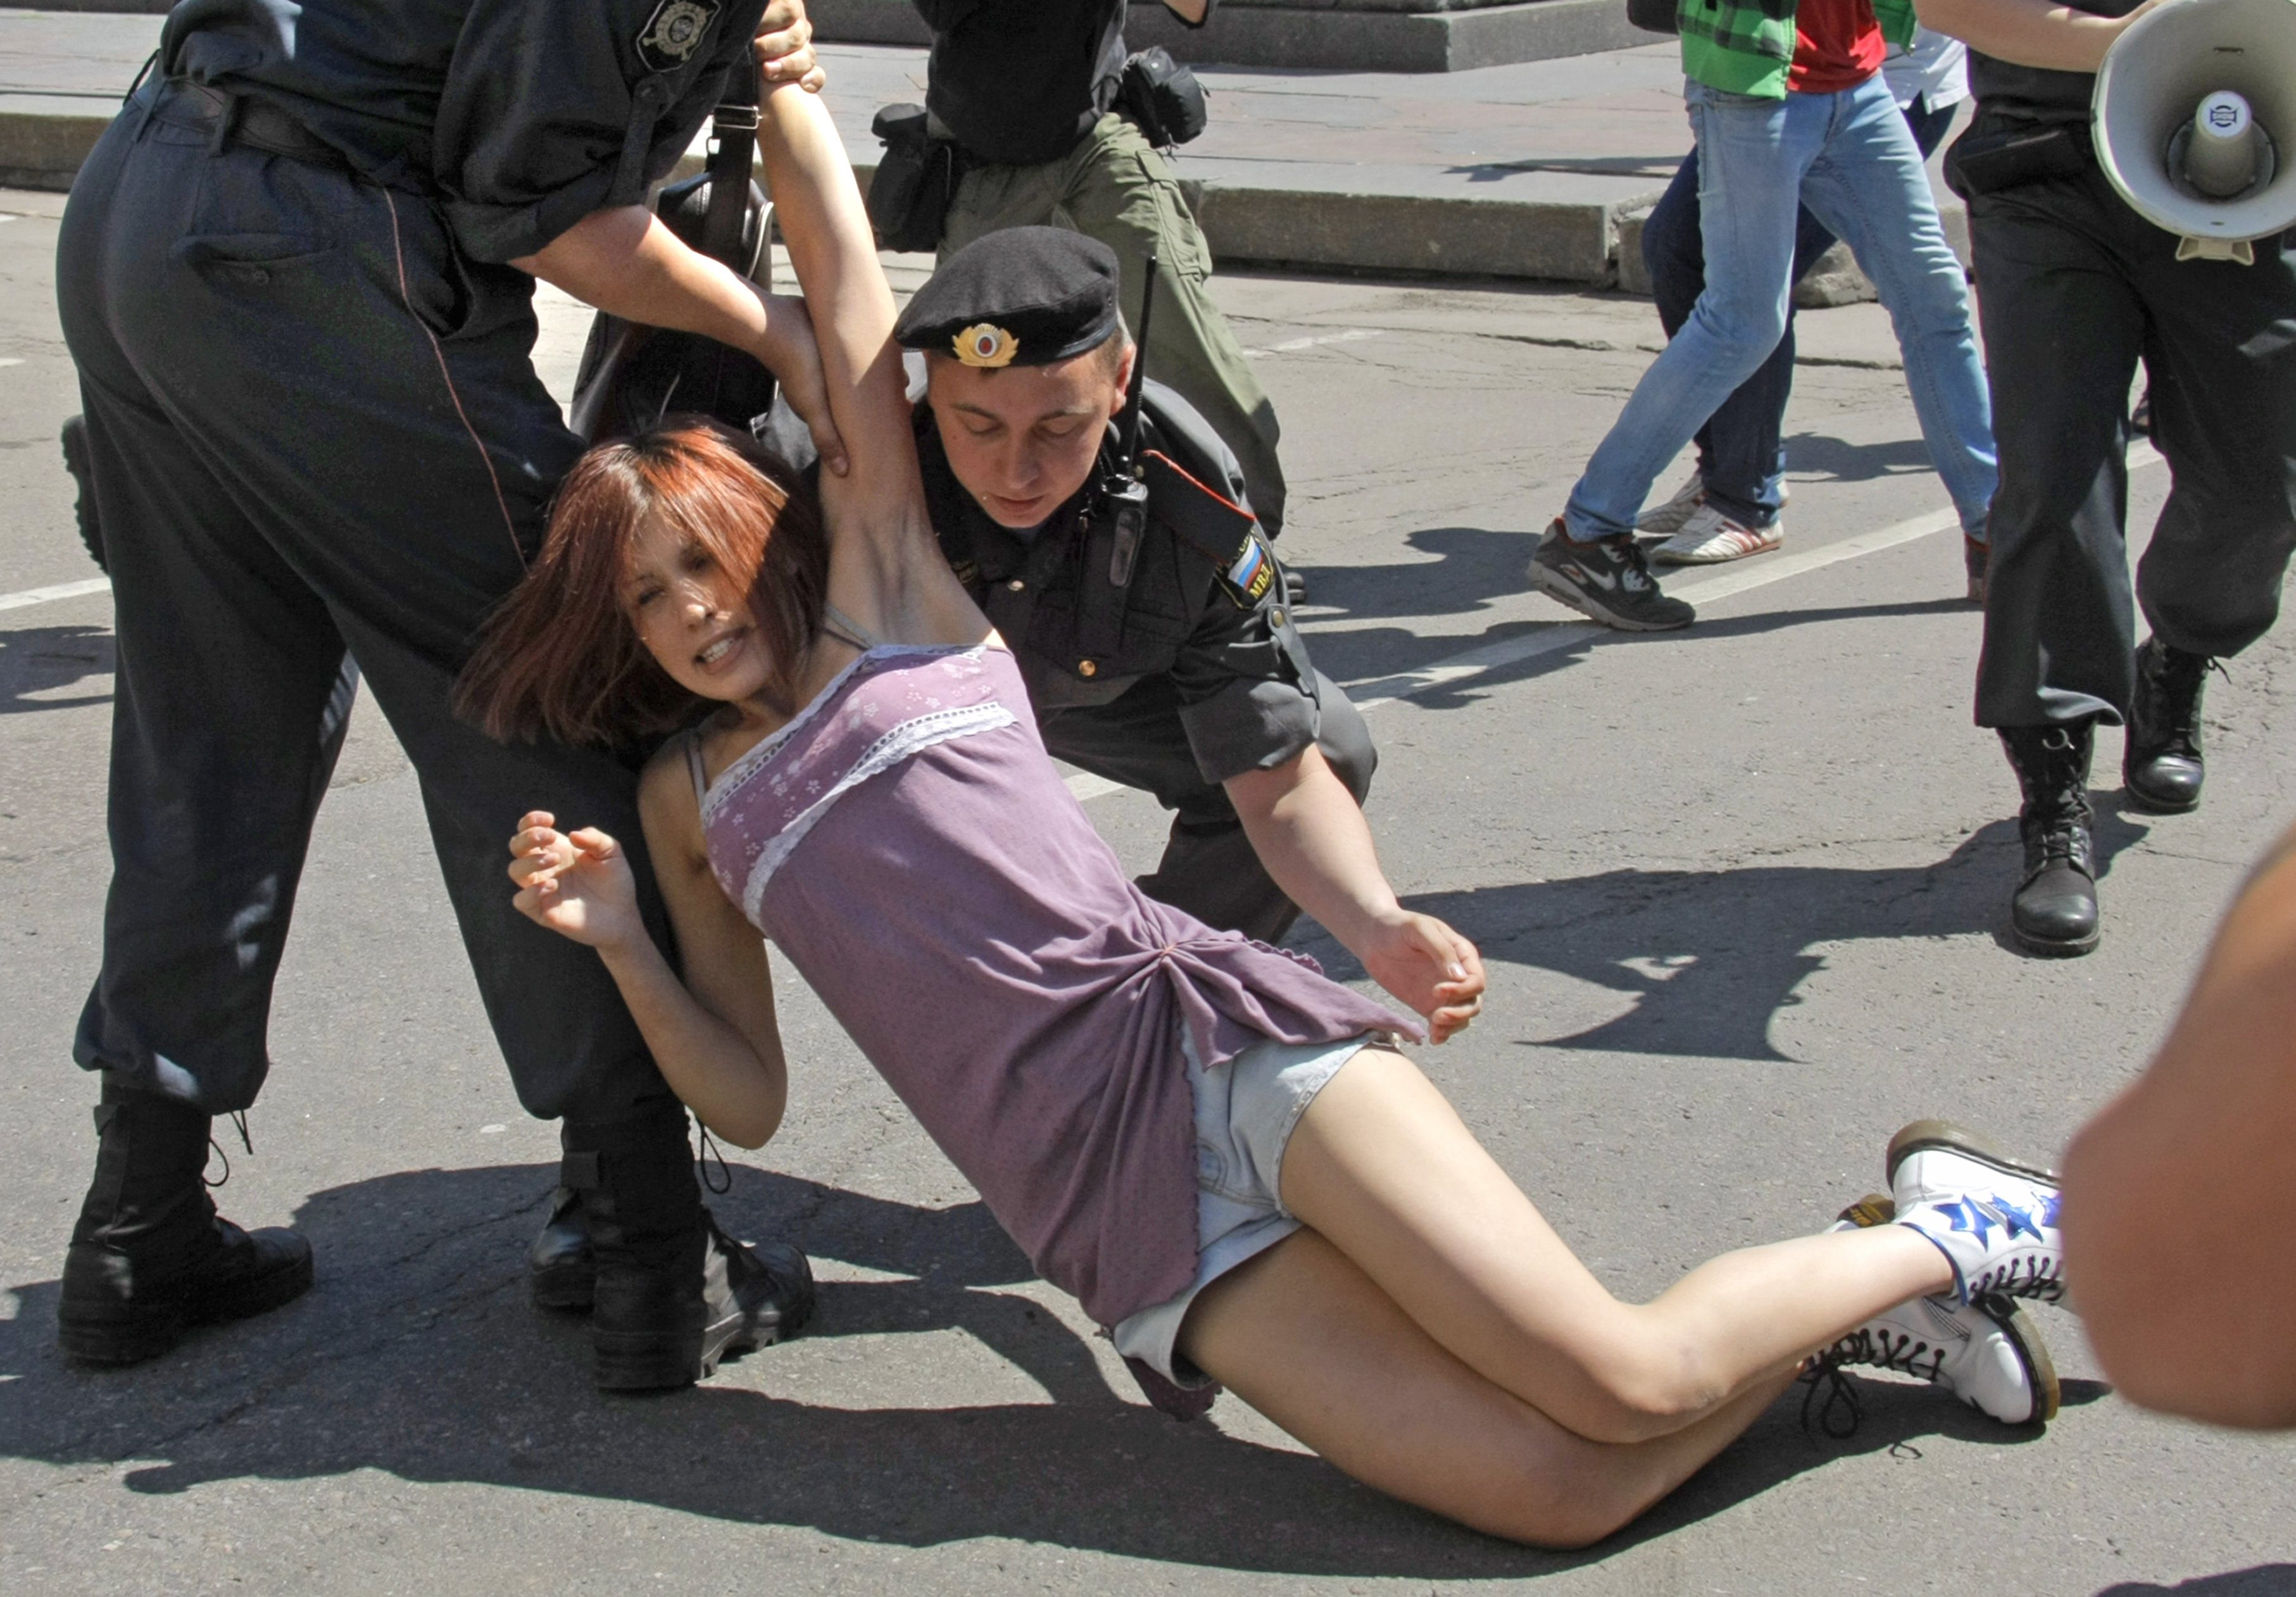 Извращенцы россия. Полицейские тащат девушку. Женщины в общественных местах.